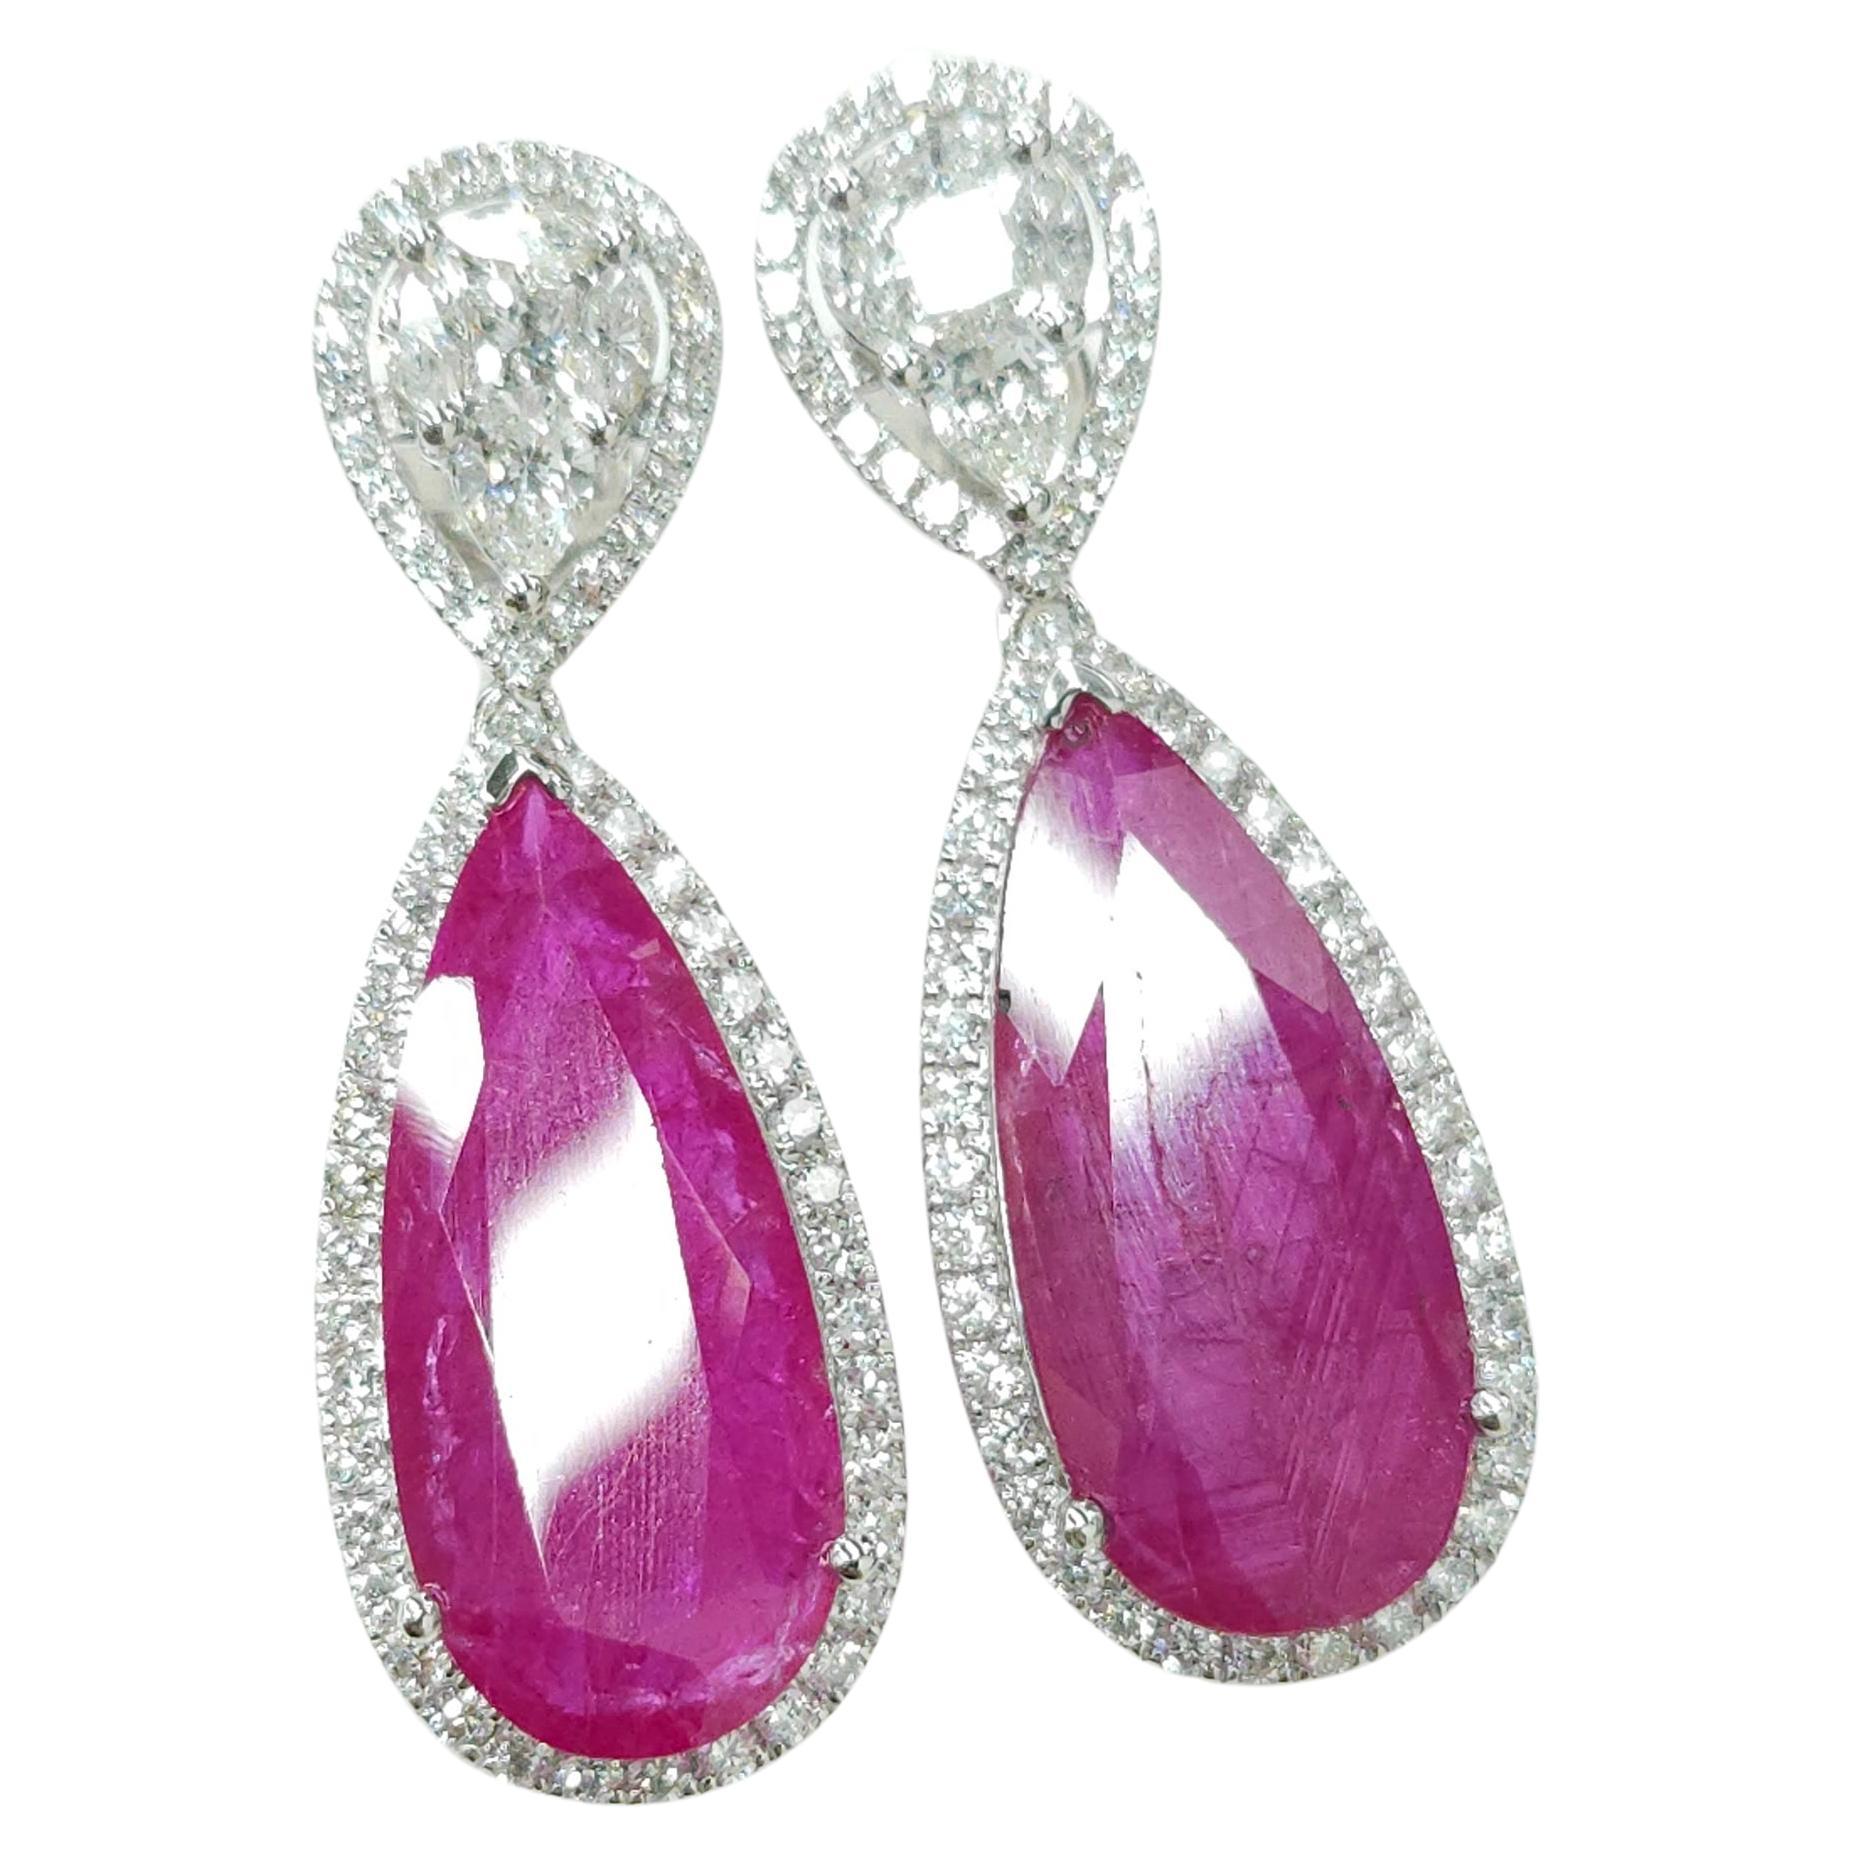 Modern IGI Certified 18.49 Carat Burma Ruby &Diamond Earrings in 18K White Gold For Sale